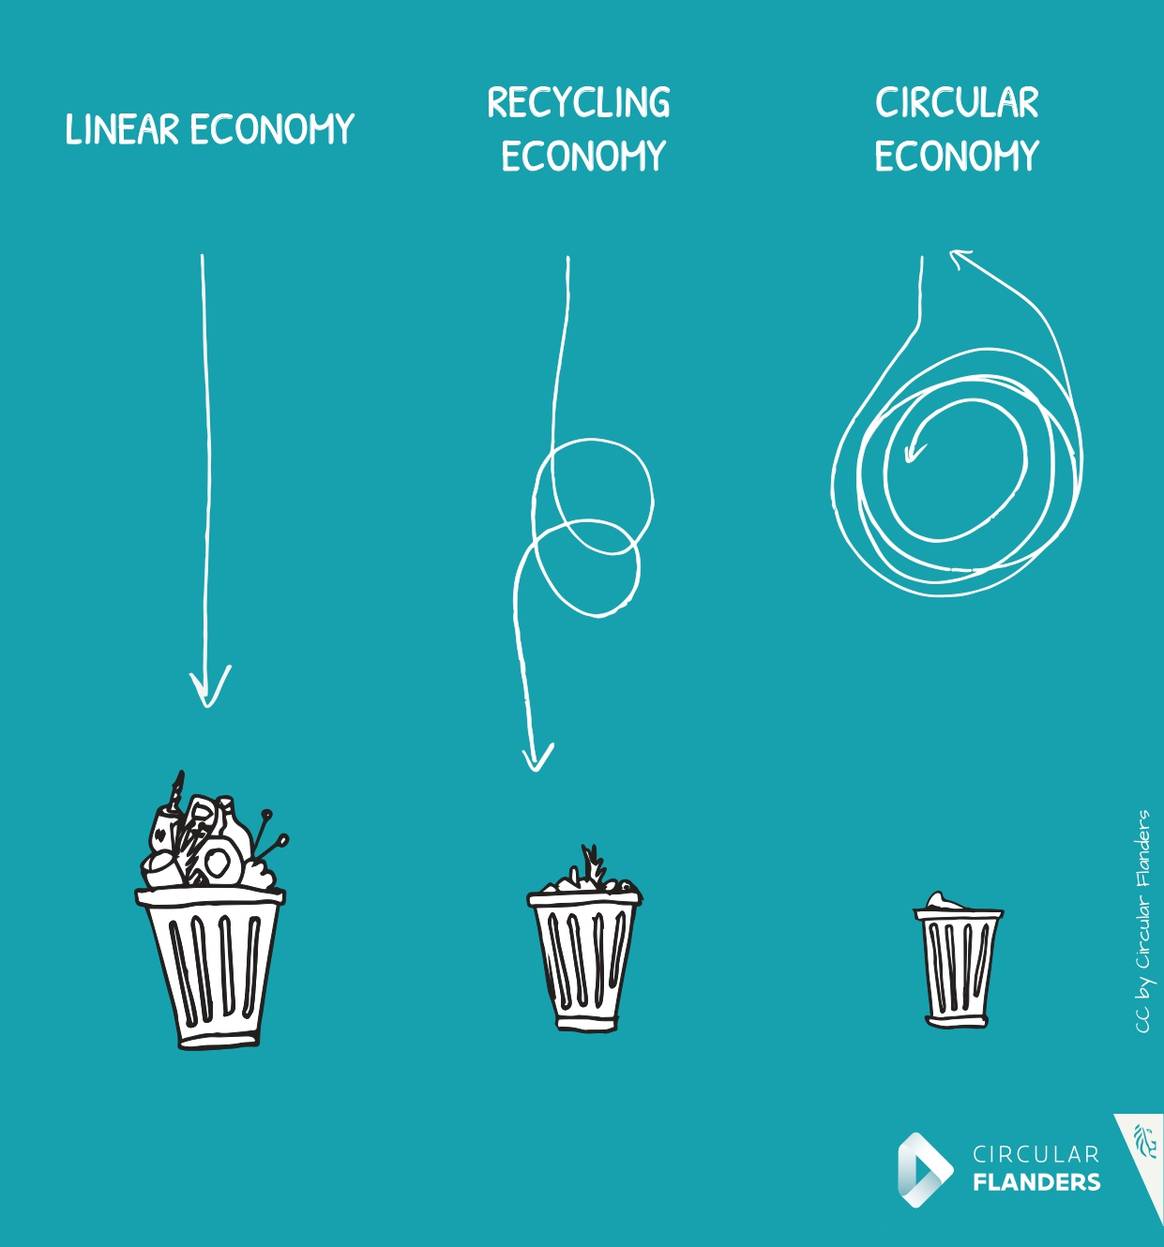 Het verschil tussen een lineaire economie en een circulaire economie. Illustratie via Circular Flanders.